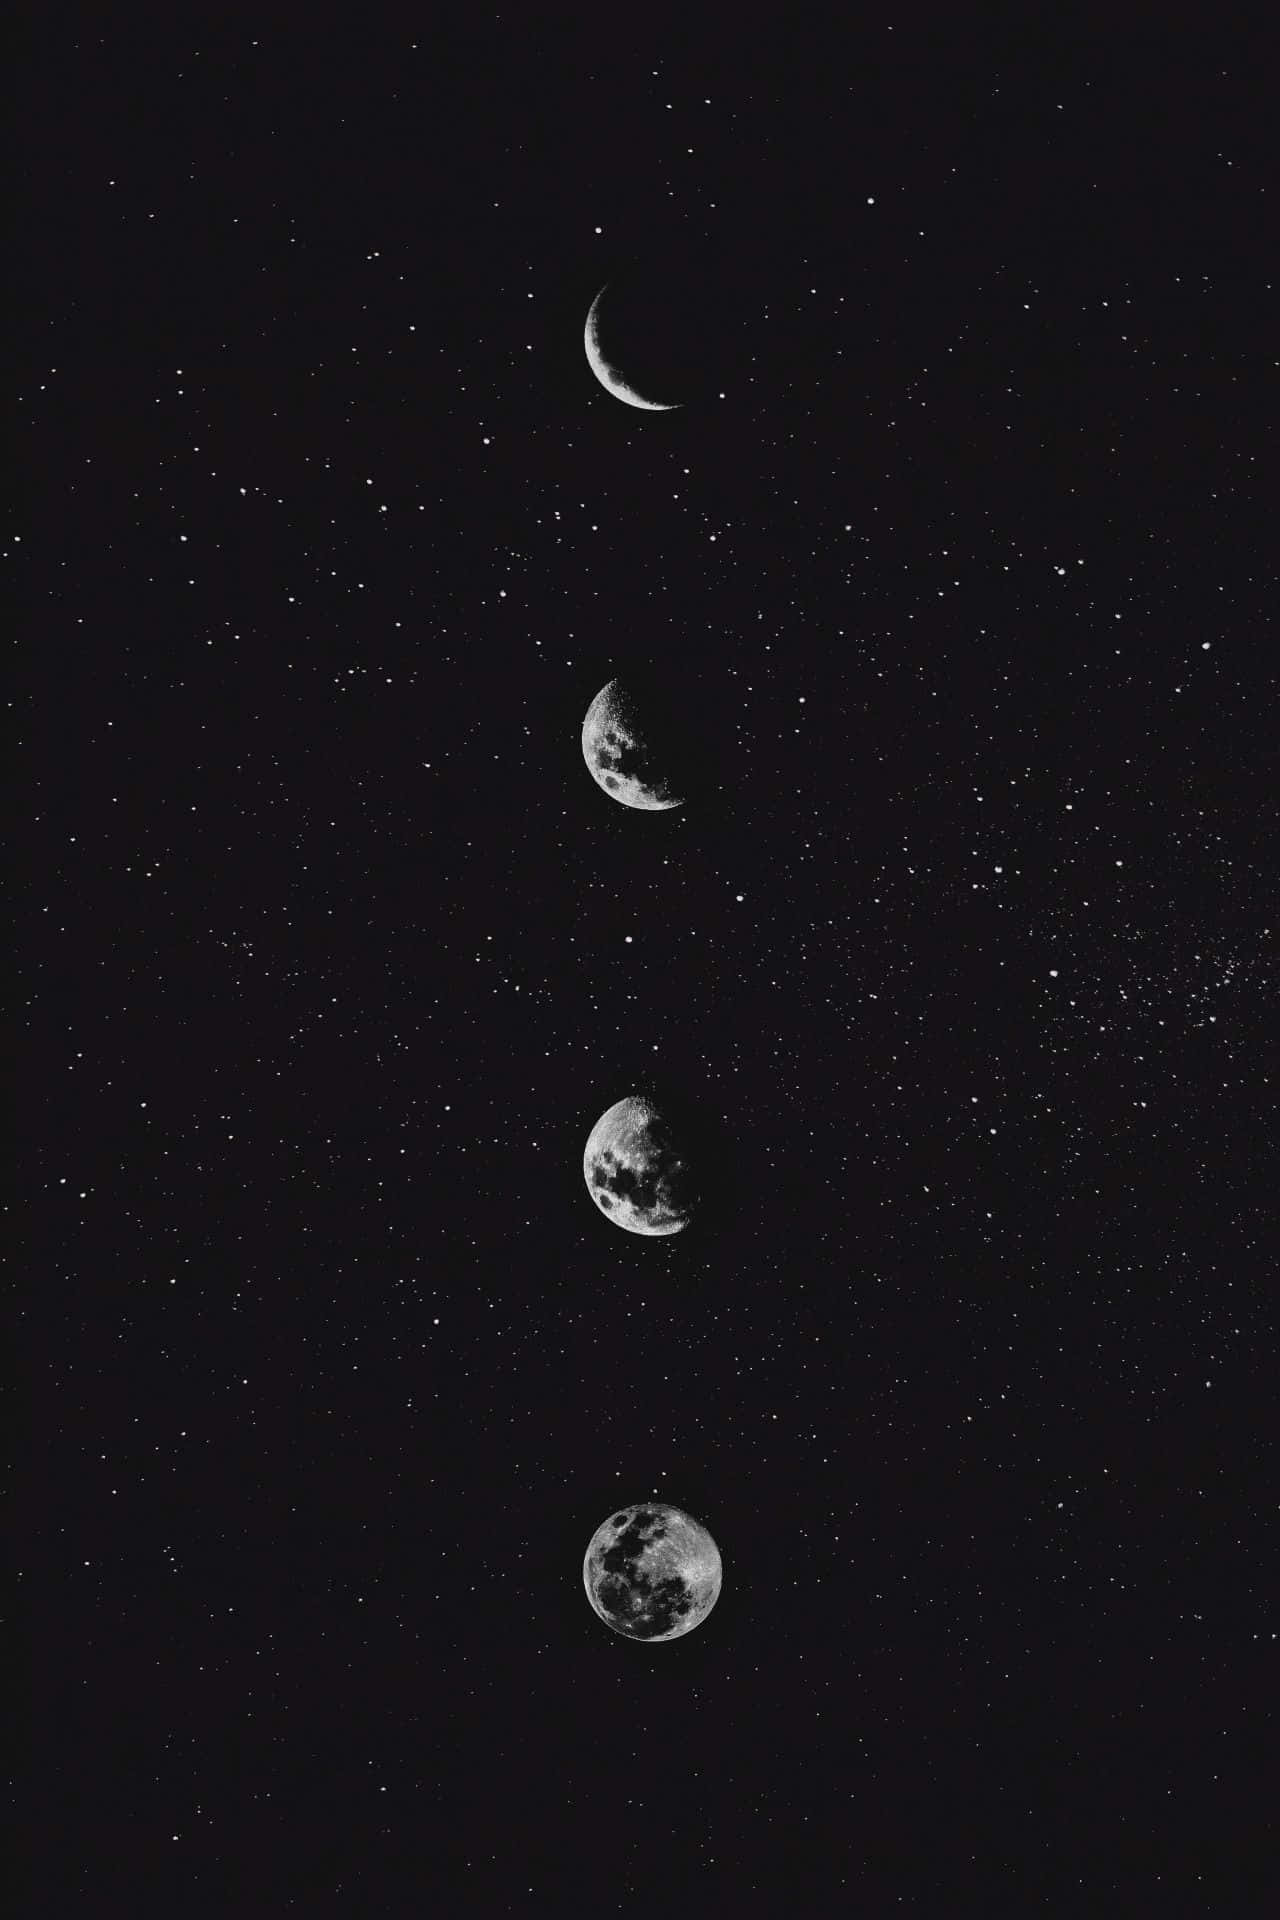 Batman-in-Moon-Night-iPhone-Wallpaper - iPhone Wallpapers